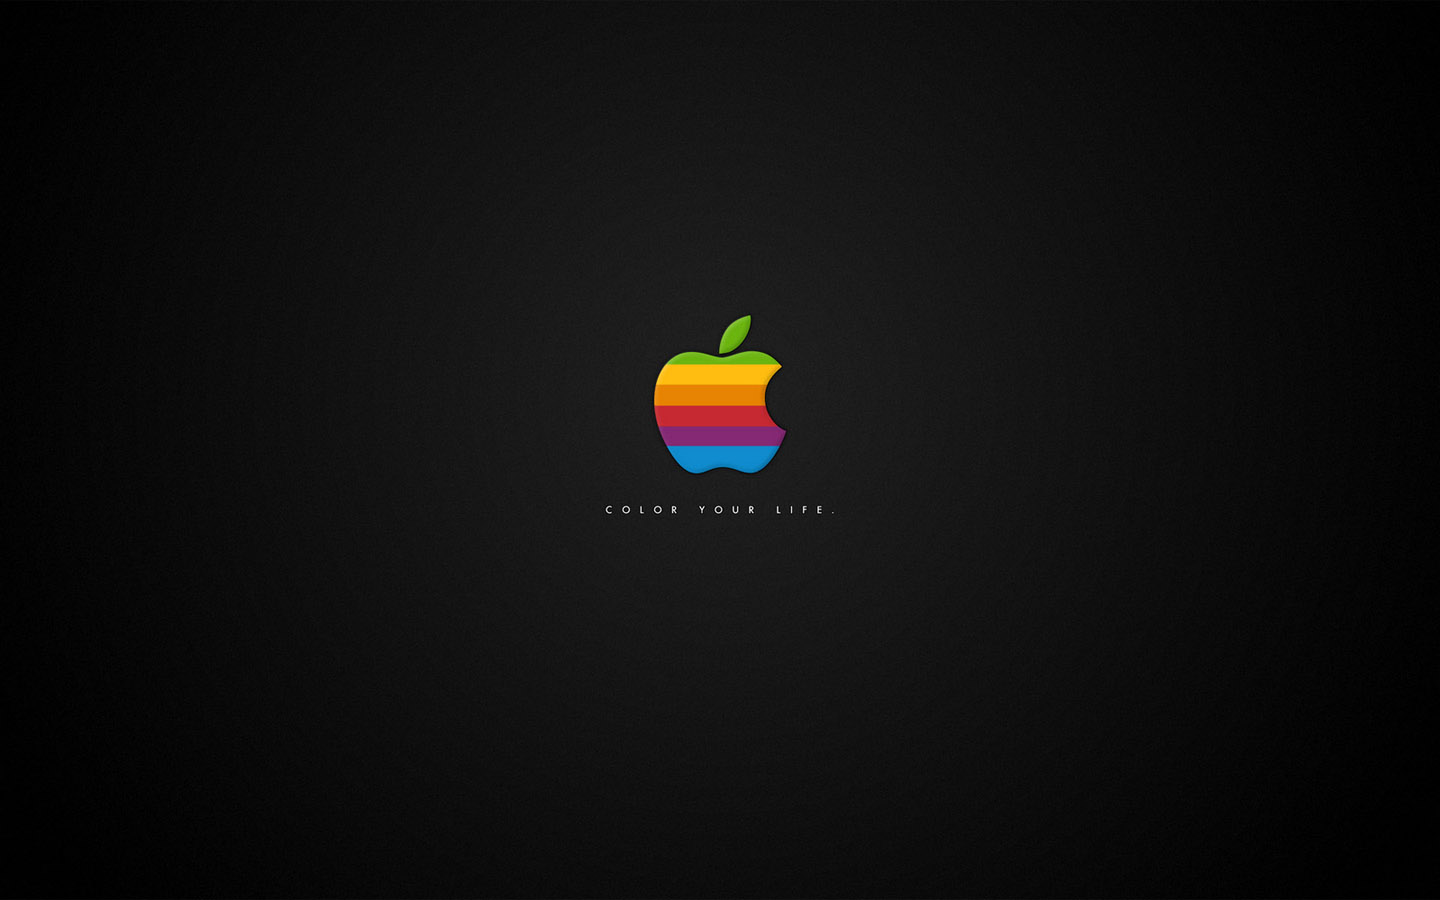 Black Apple Desktop Background